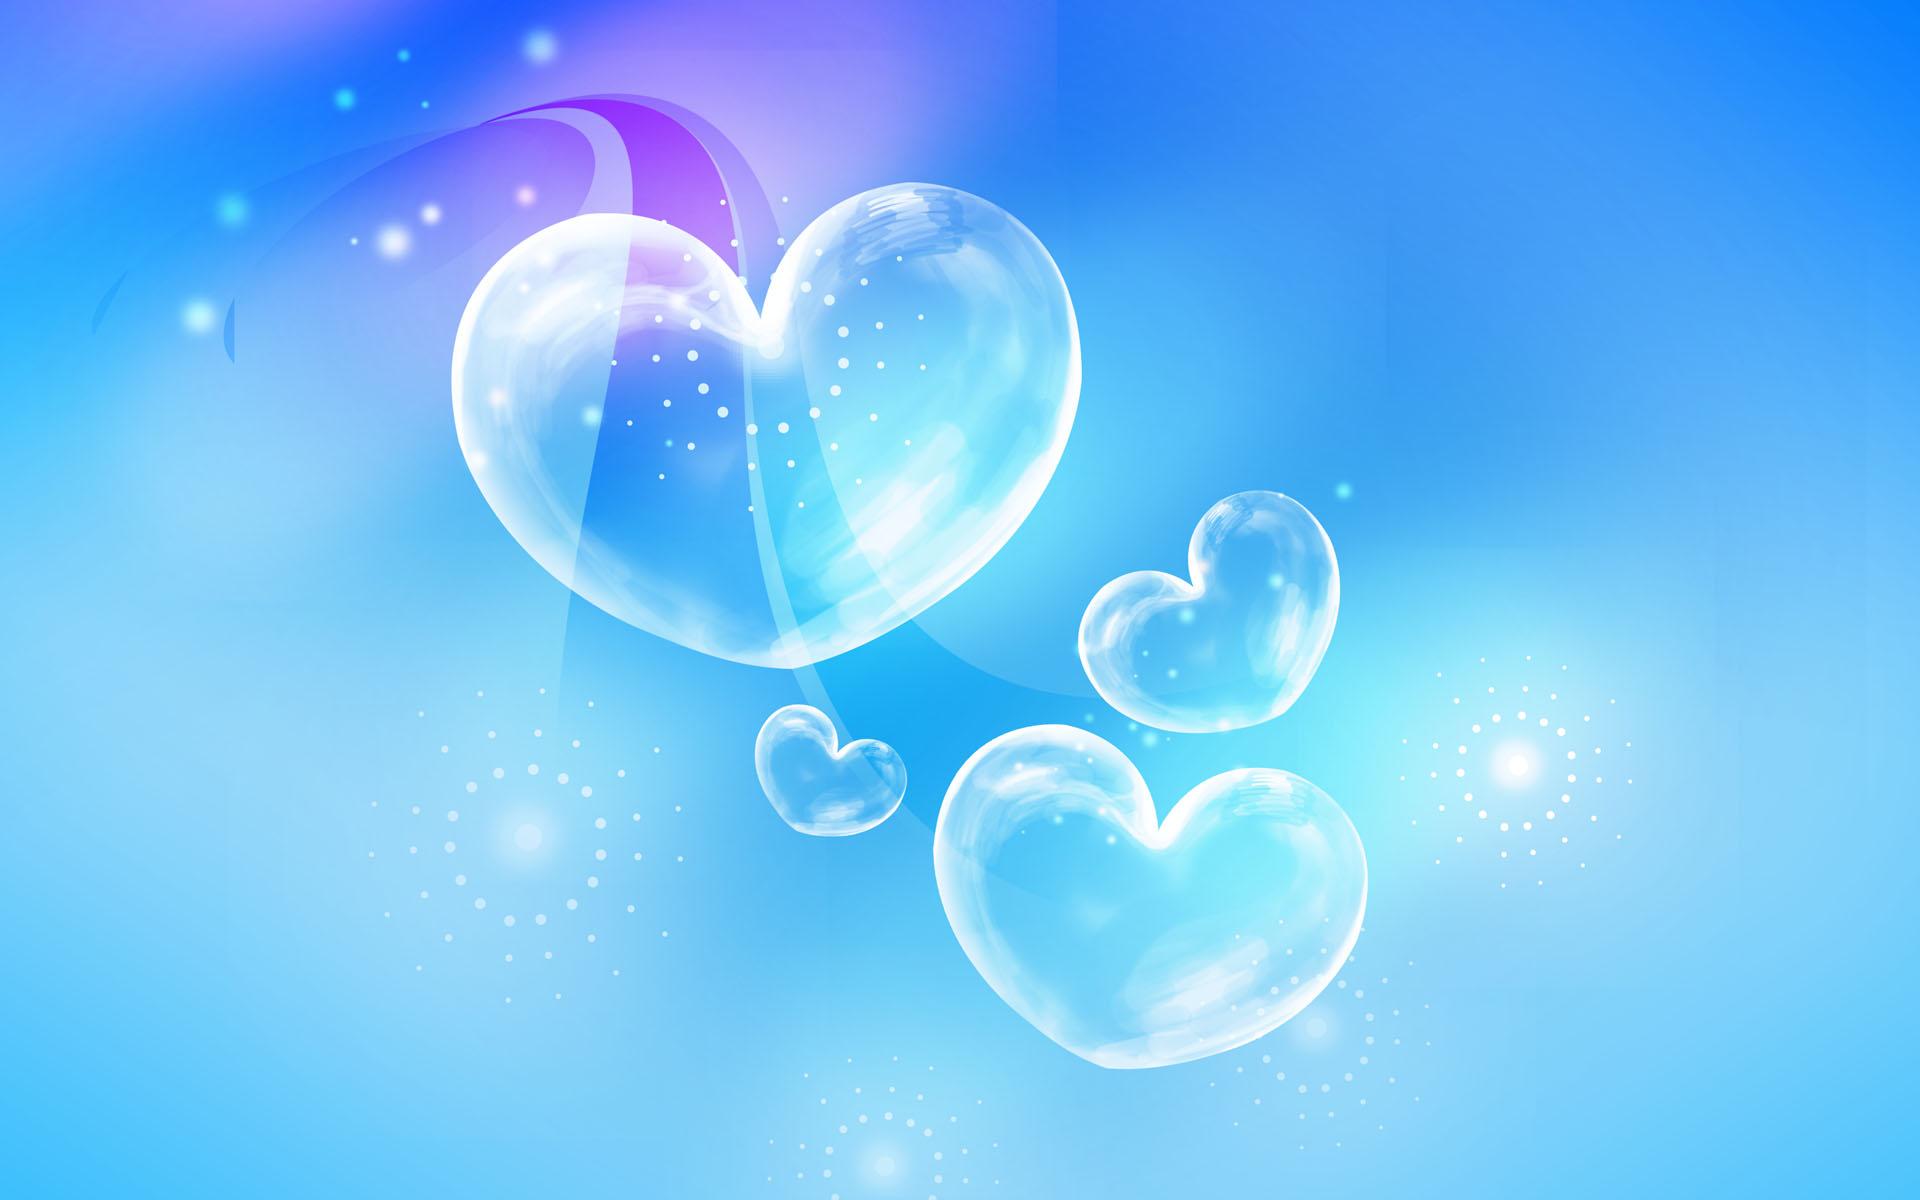 Hình nền Crystal Clear Hearts: Tận hưởng vẻ đẹp lung linh của những hình nền Crystal Clear Hearts trên màn hình điện thoại của bạn. Chất lượng hình ảnh siêu nét và sắc nét tạo cảm giác như thật, chắc chắn sẽ khiến bạn say đắm ngay từ những giây phút đầu tiên.